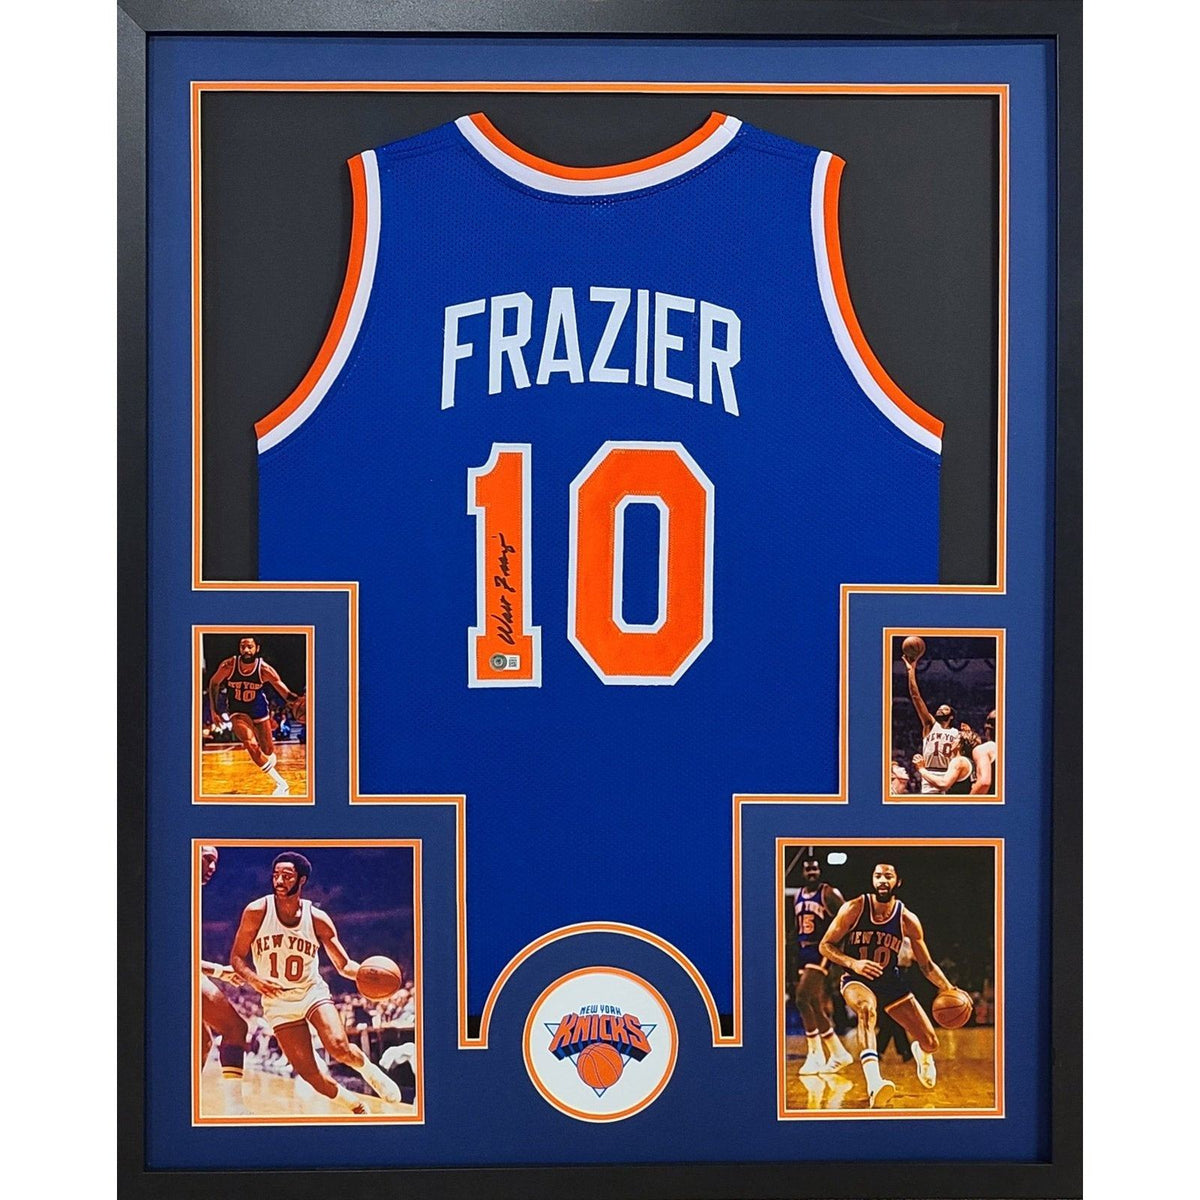 Walt Frazier Signed Framed Jersey Beckett Autographed New York Knicks